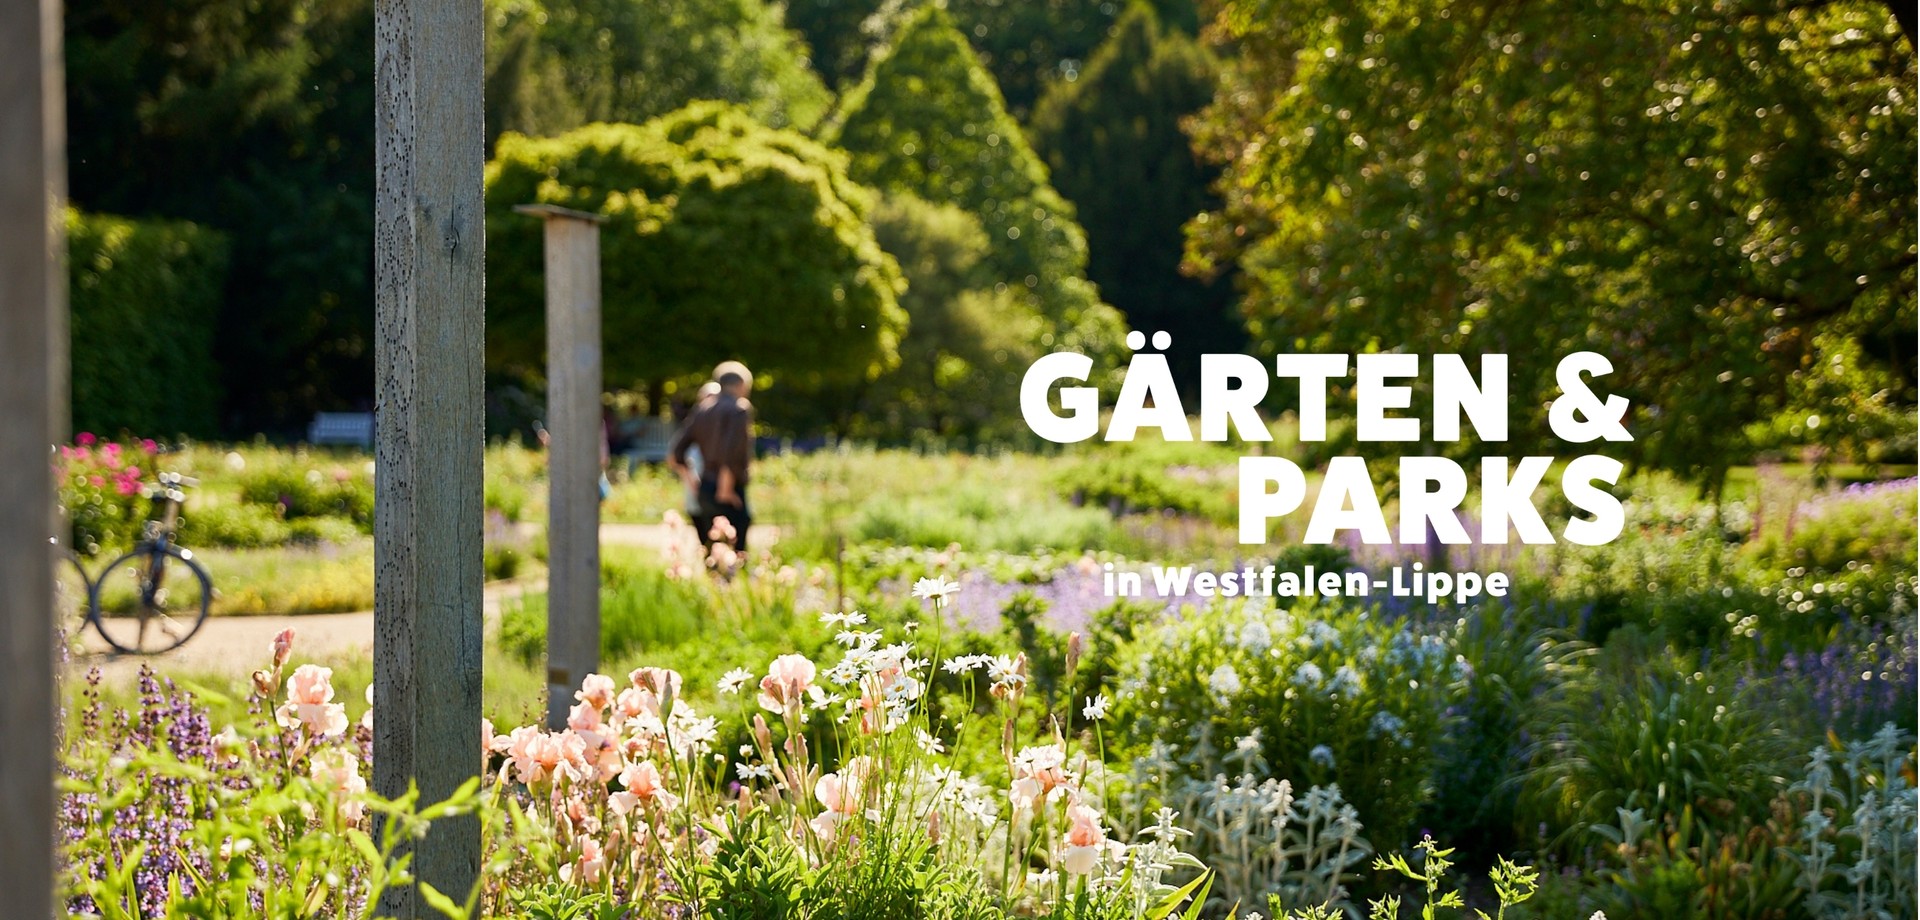 "Gärten und Parks in Westfalen-Lippe"